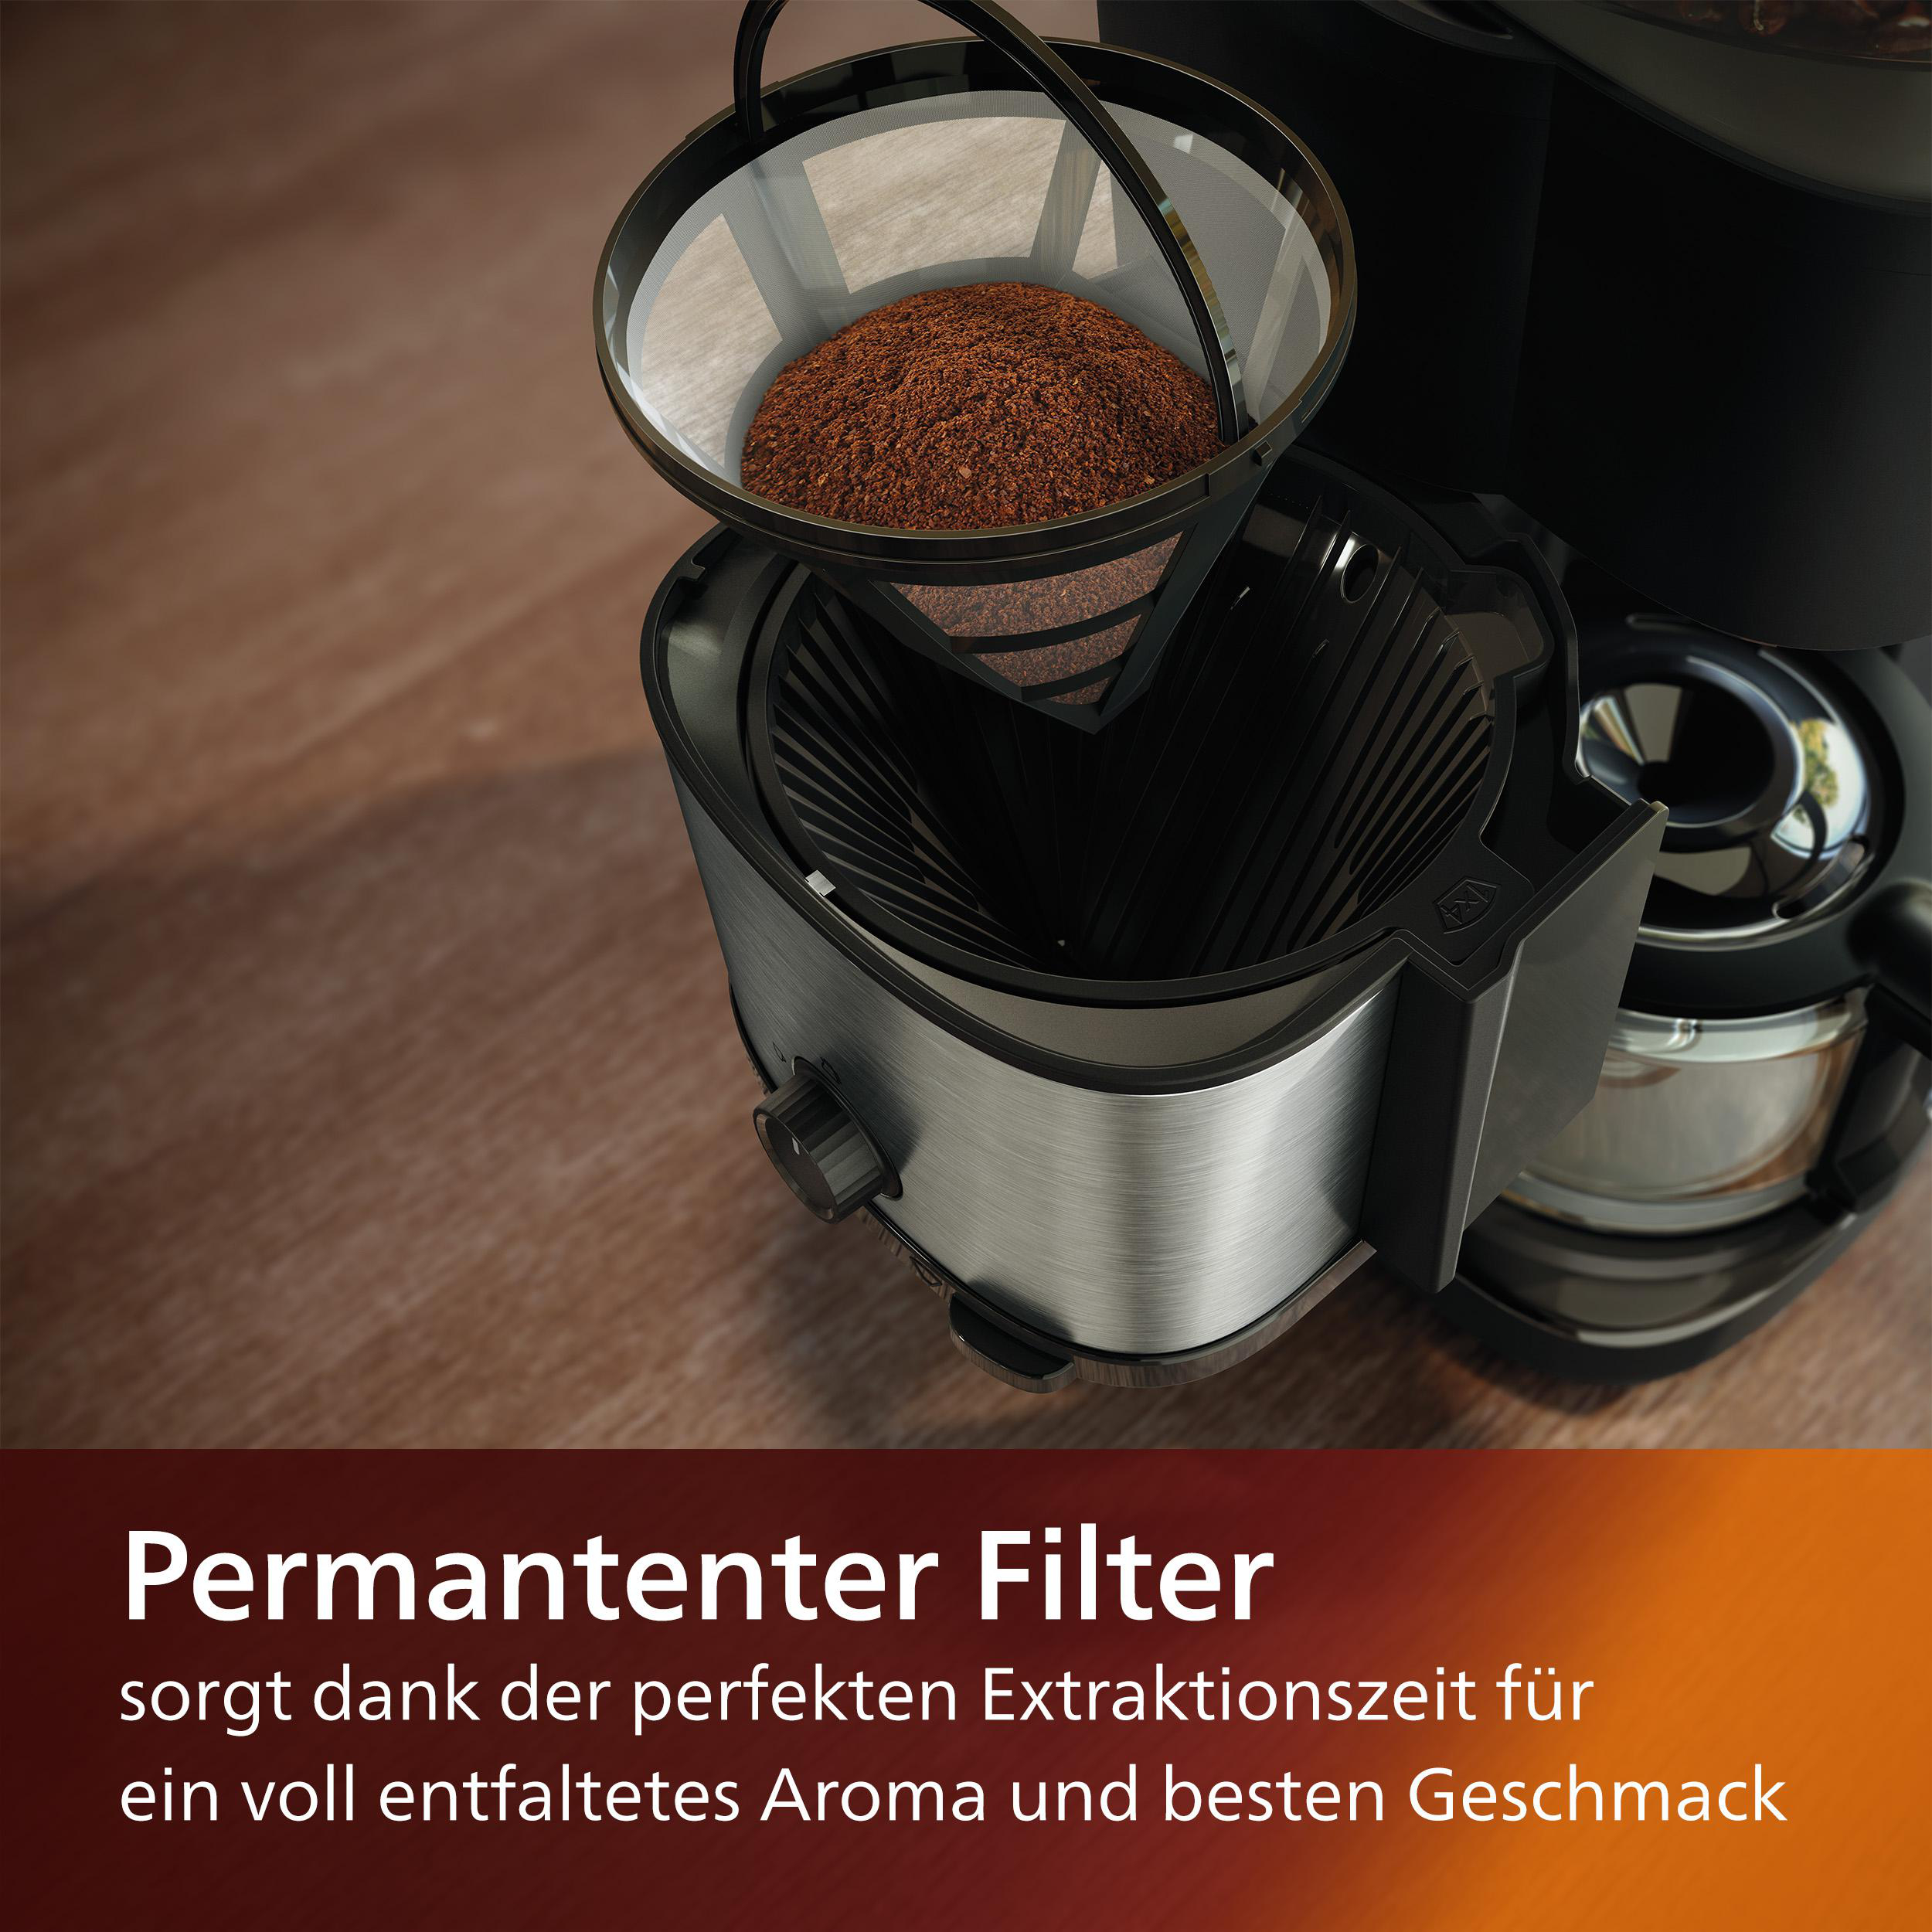 PHILIPS HD7900/50 All-in-1 Brew, mit Schwarz/Silber Kaffeemaschine inkl. Duo-Kaffeebohnenbehälter, Dosierlöffel und und Smart Permanentfilter Mahlwerk, Dosierung